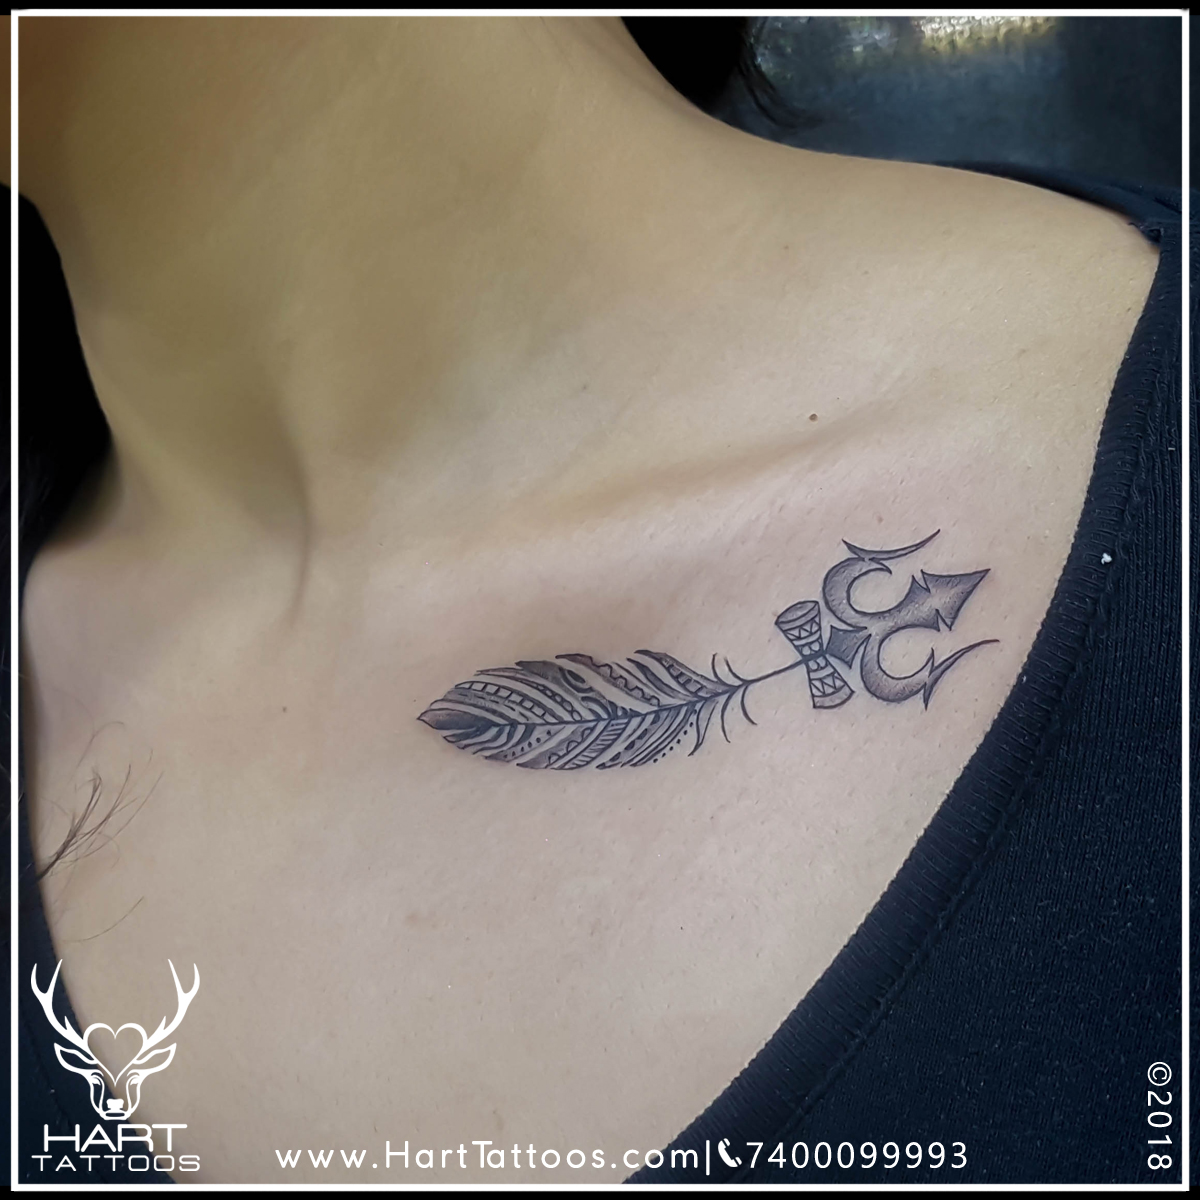 Trishul Tattoo|Collarbone Tattoo|Tattoo design for girls - Hart Tattoos  India